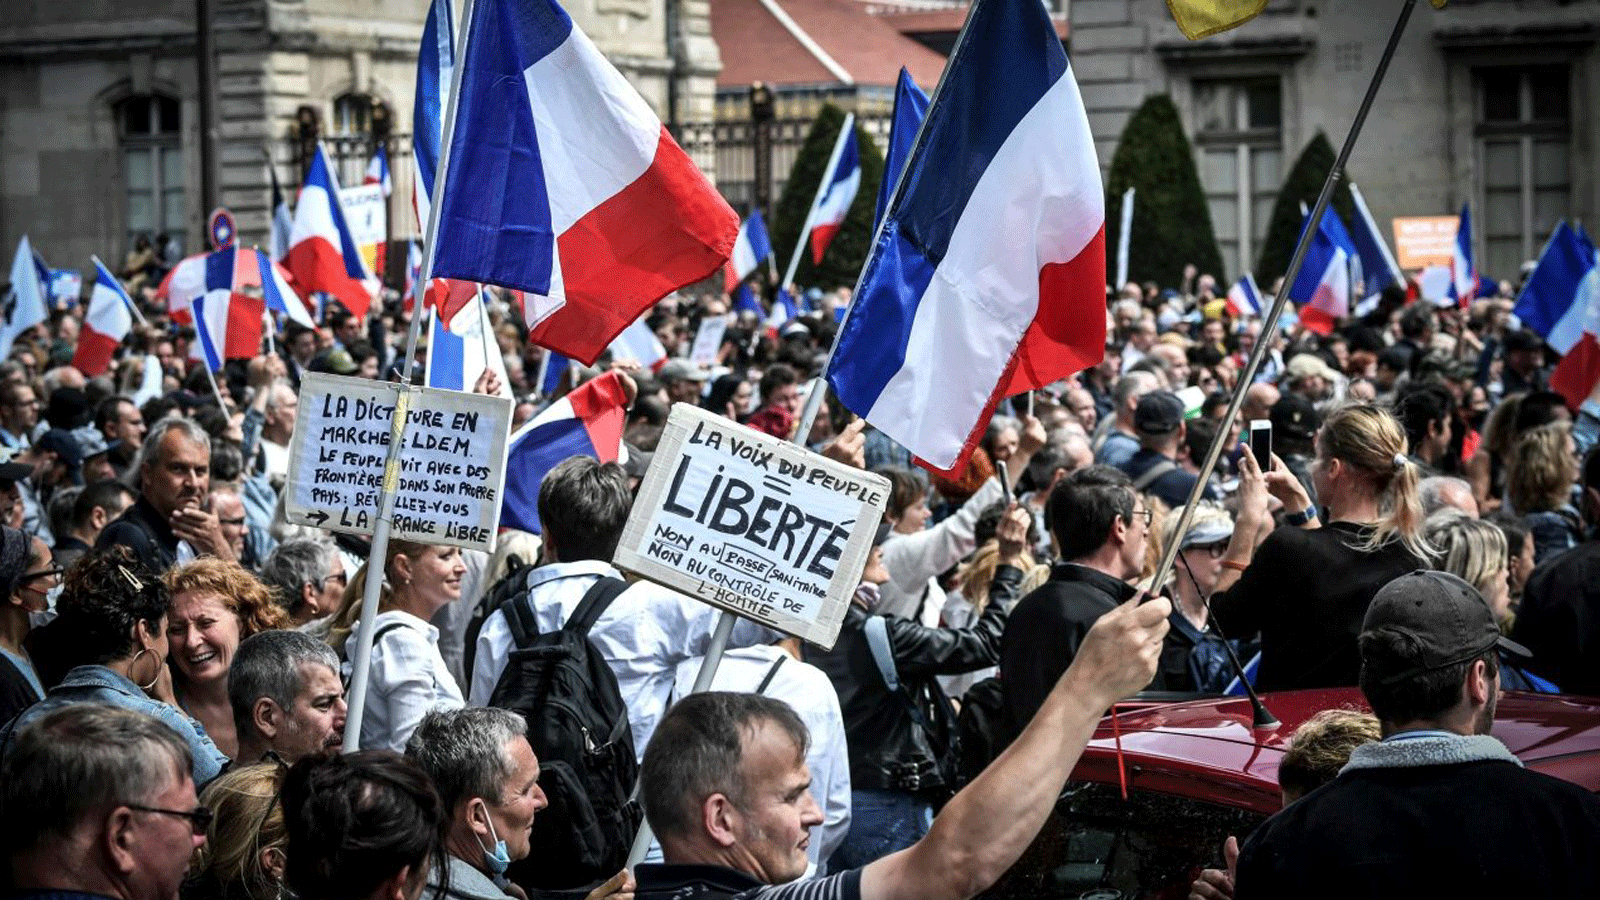 متظاهرون بالقرب من مدرسة Ecole Militaire في اليوم الوطني للاحتجاج على بطاقة Covid-19 الصحية الإلزامية. باريس في 7 آب/ أغسطس 2021